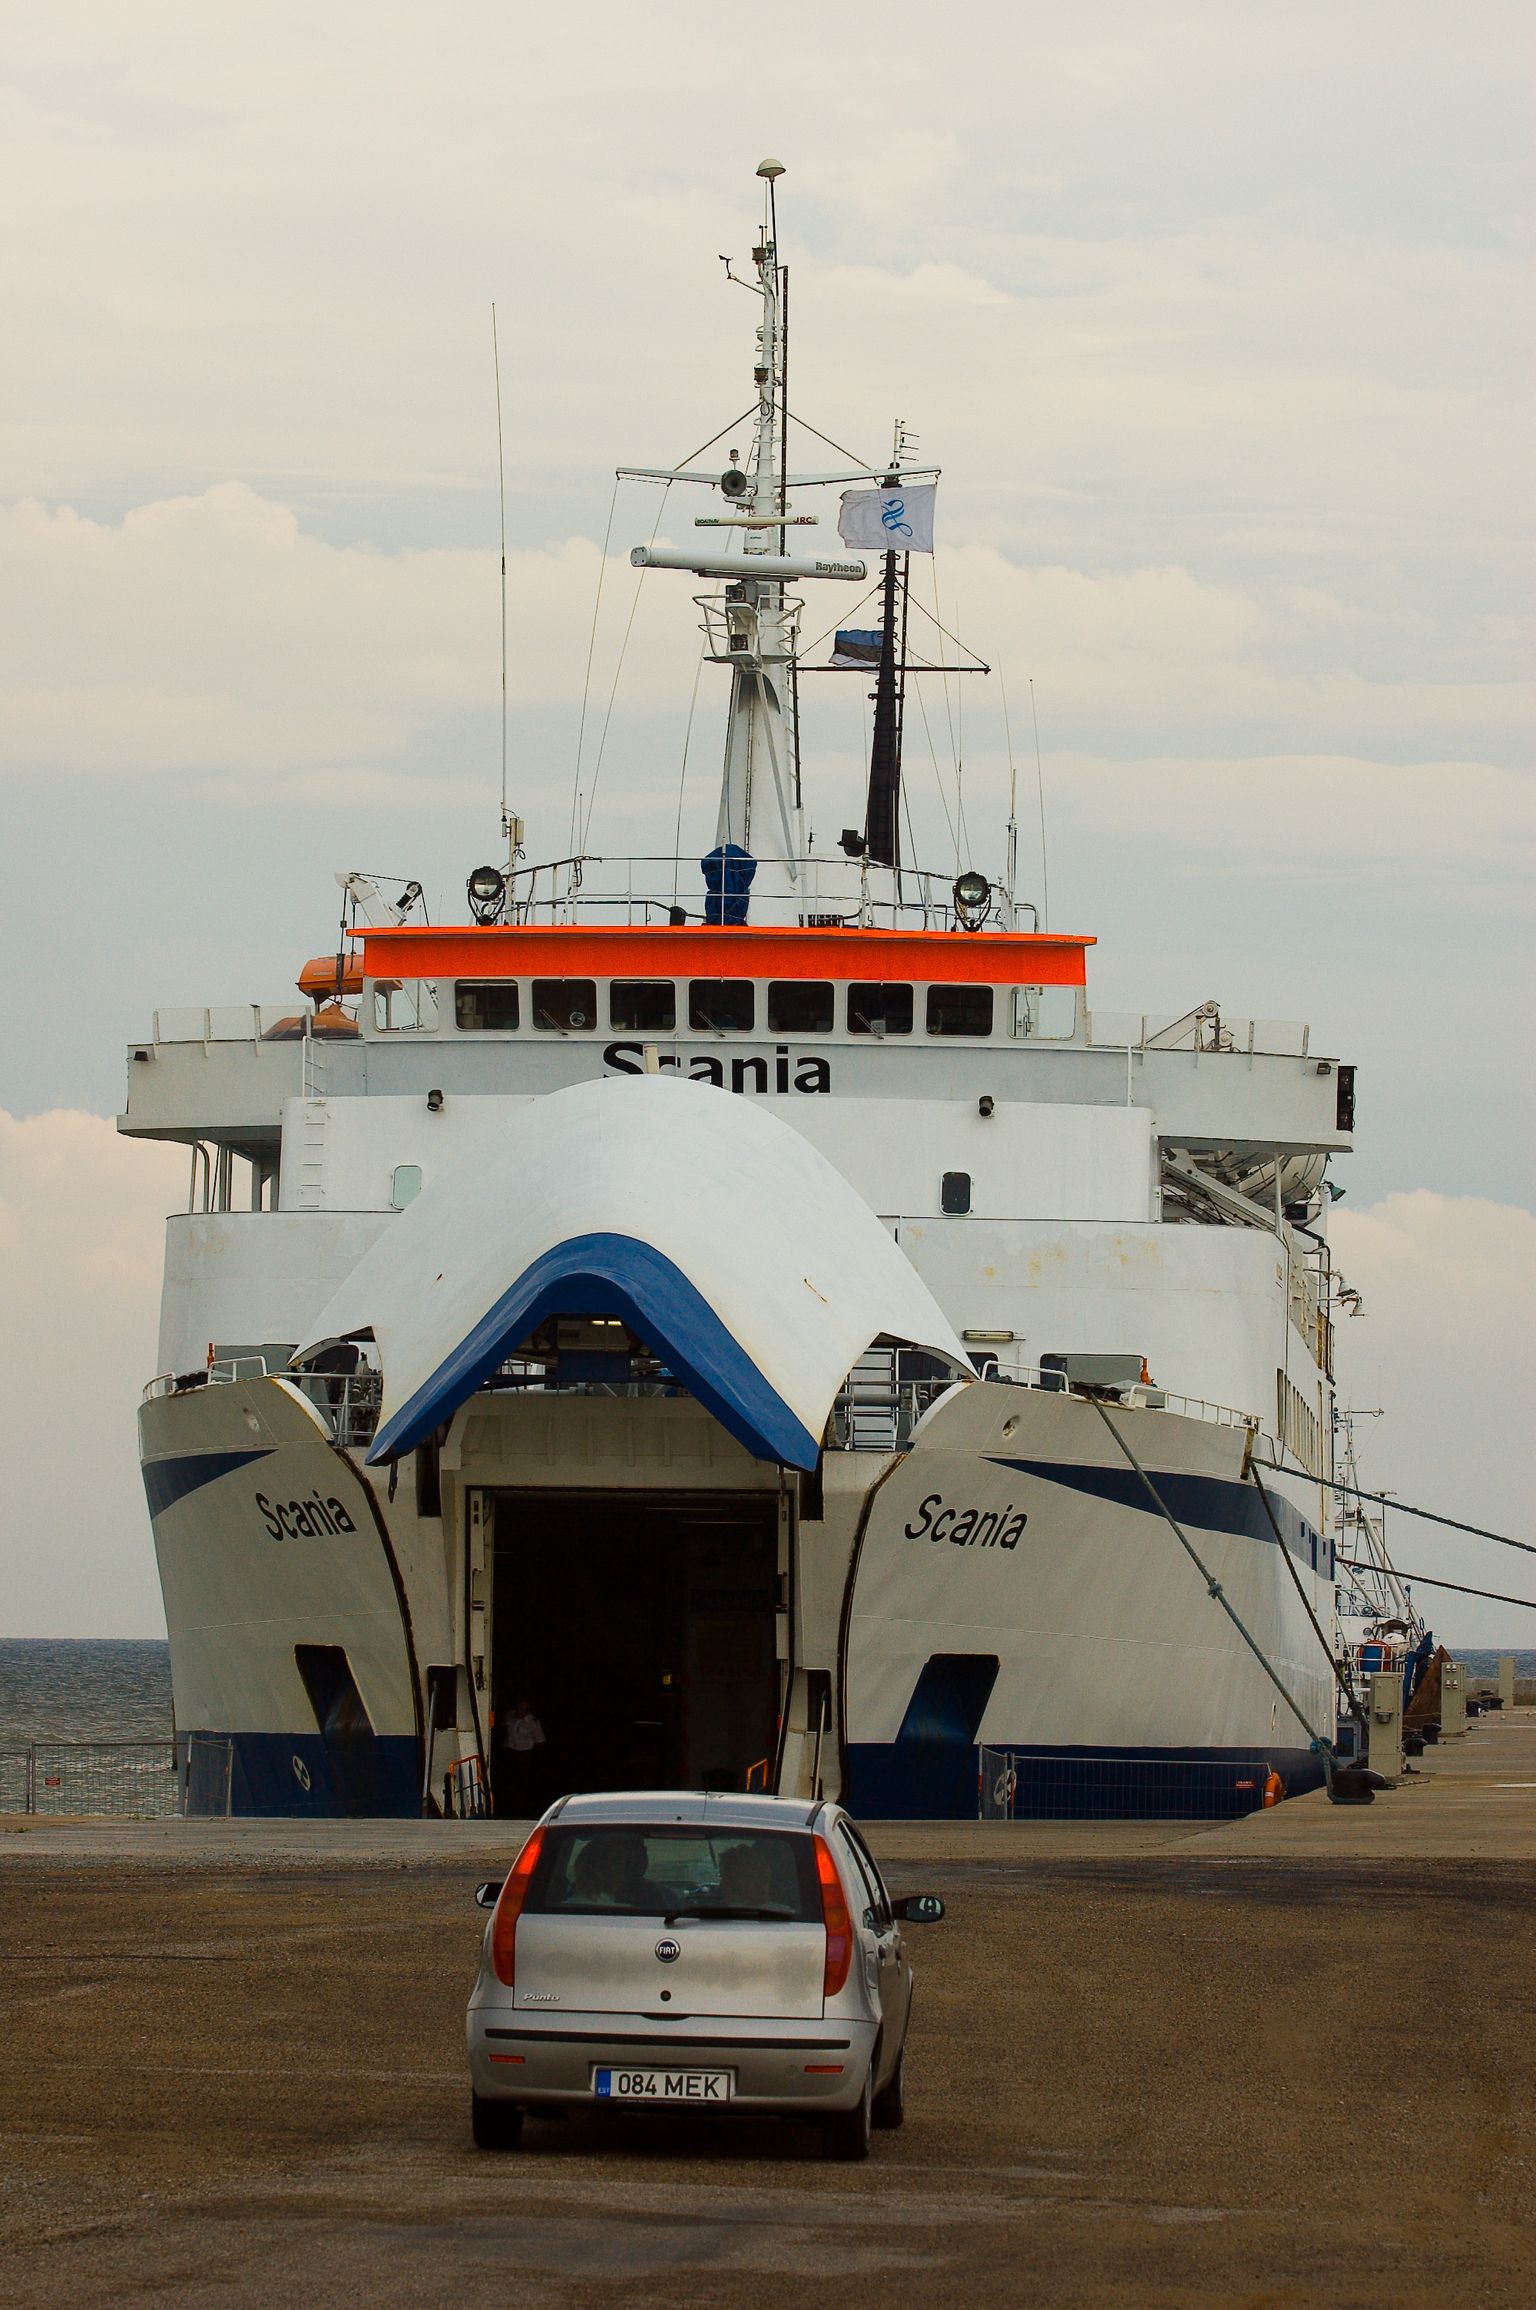 Varem on Ventspilsi ja Mõntu vahet sõitnud Scania.